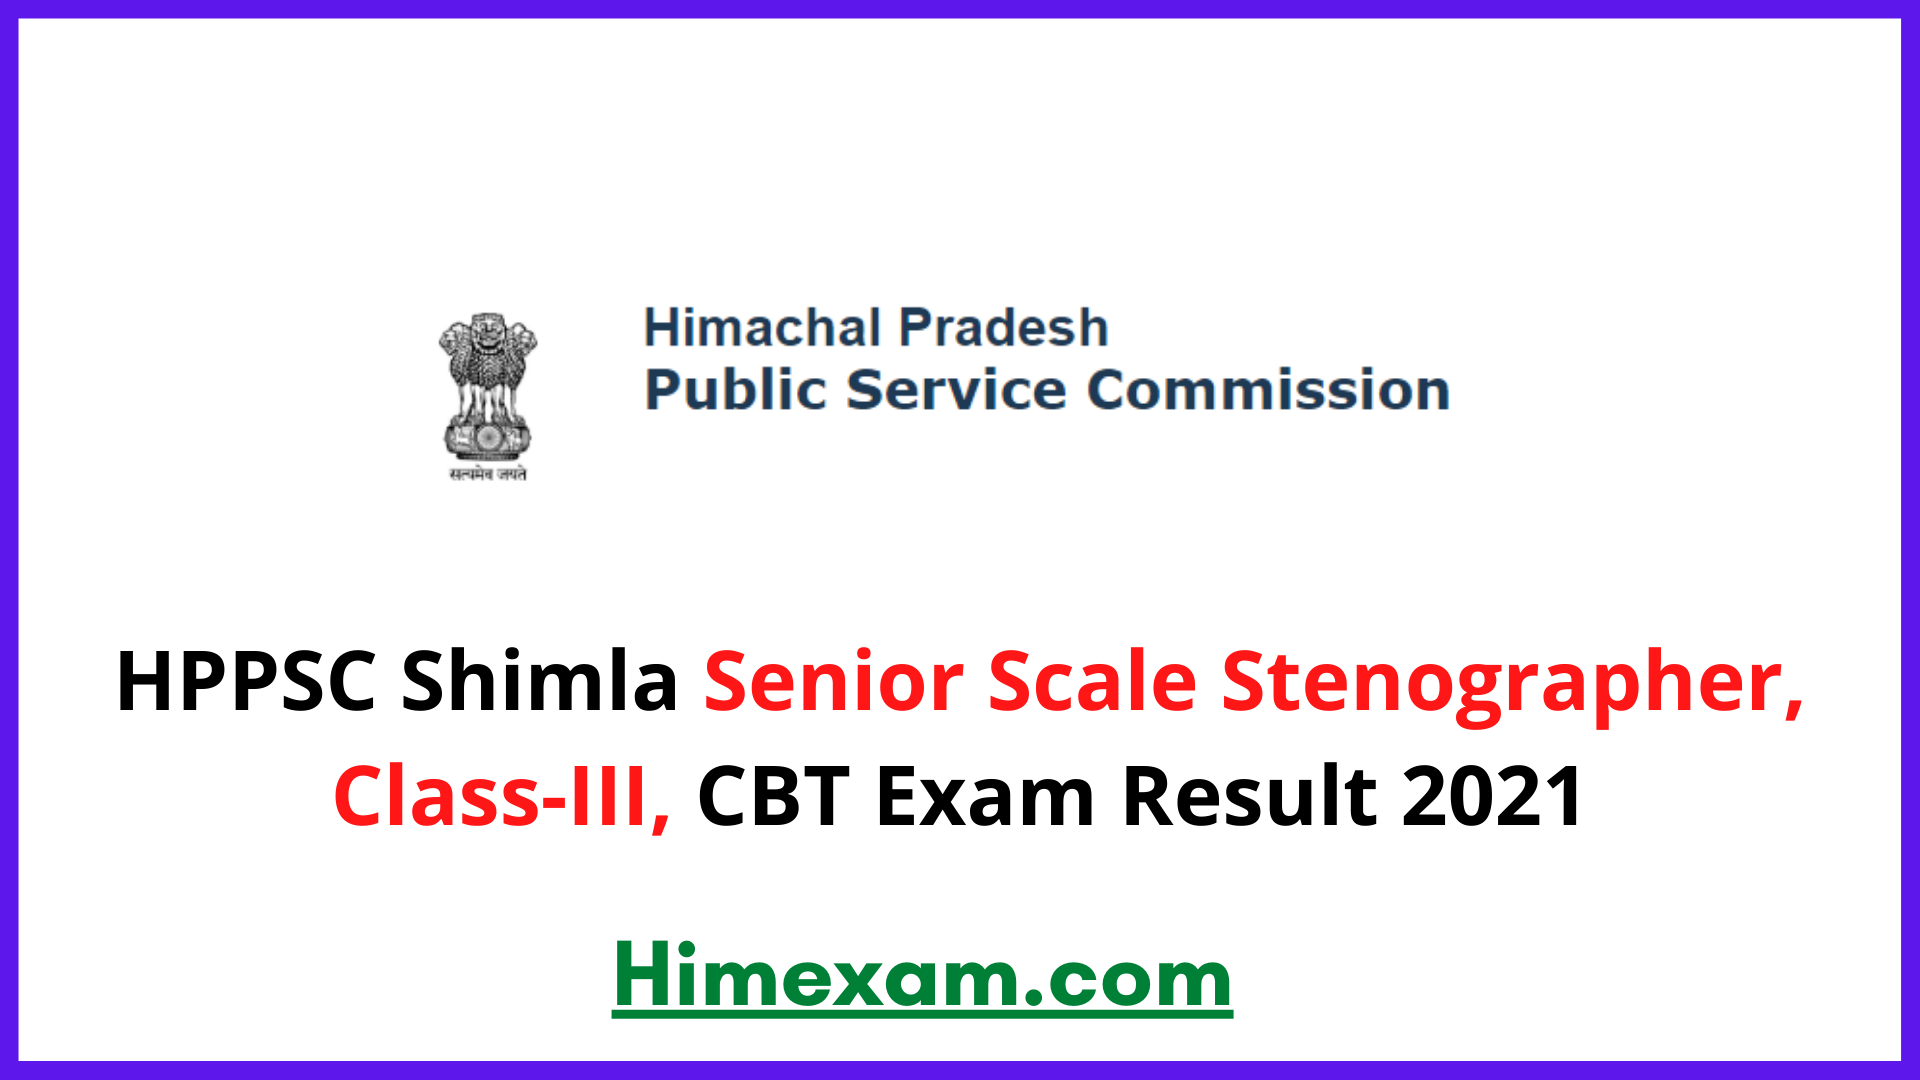 HPPSC Shimla Senior Scale Stenographer, Class-III, CBT Exam Result 2021